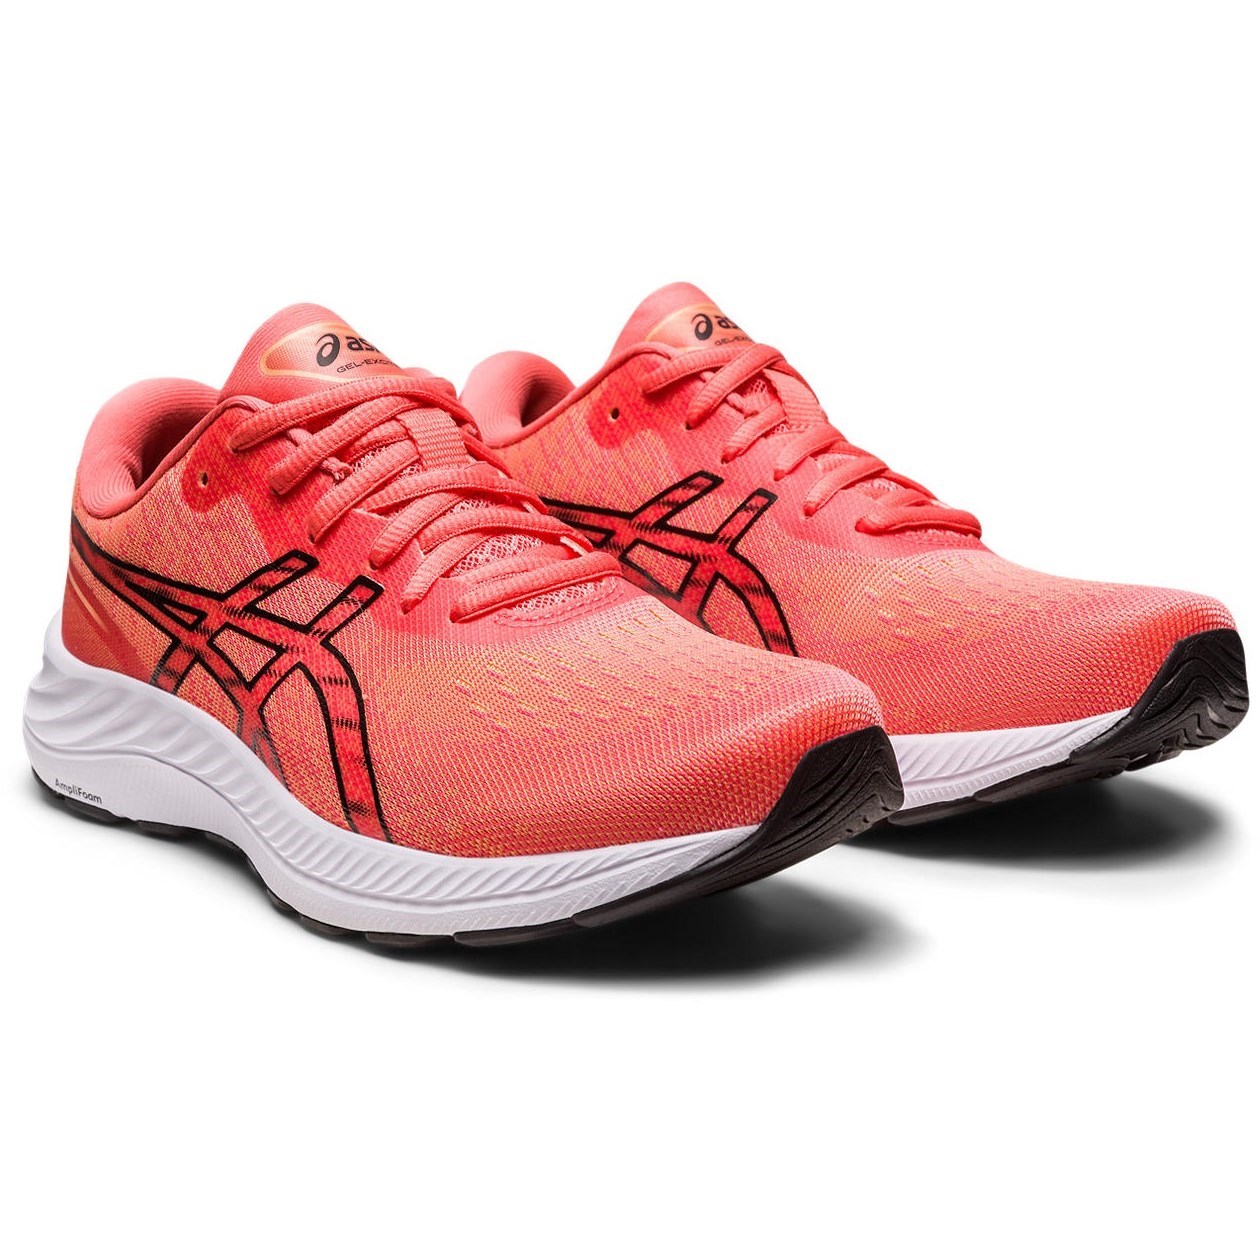 Asics Gel Excite 9 - Womens Running Shoes - Papaya/Black | Sportitude